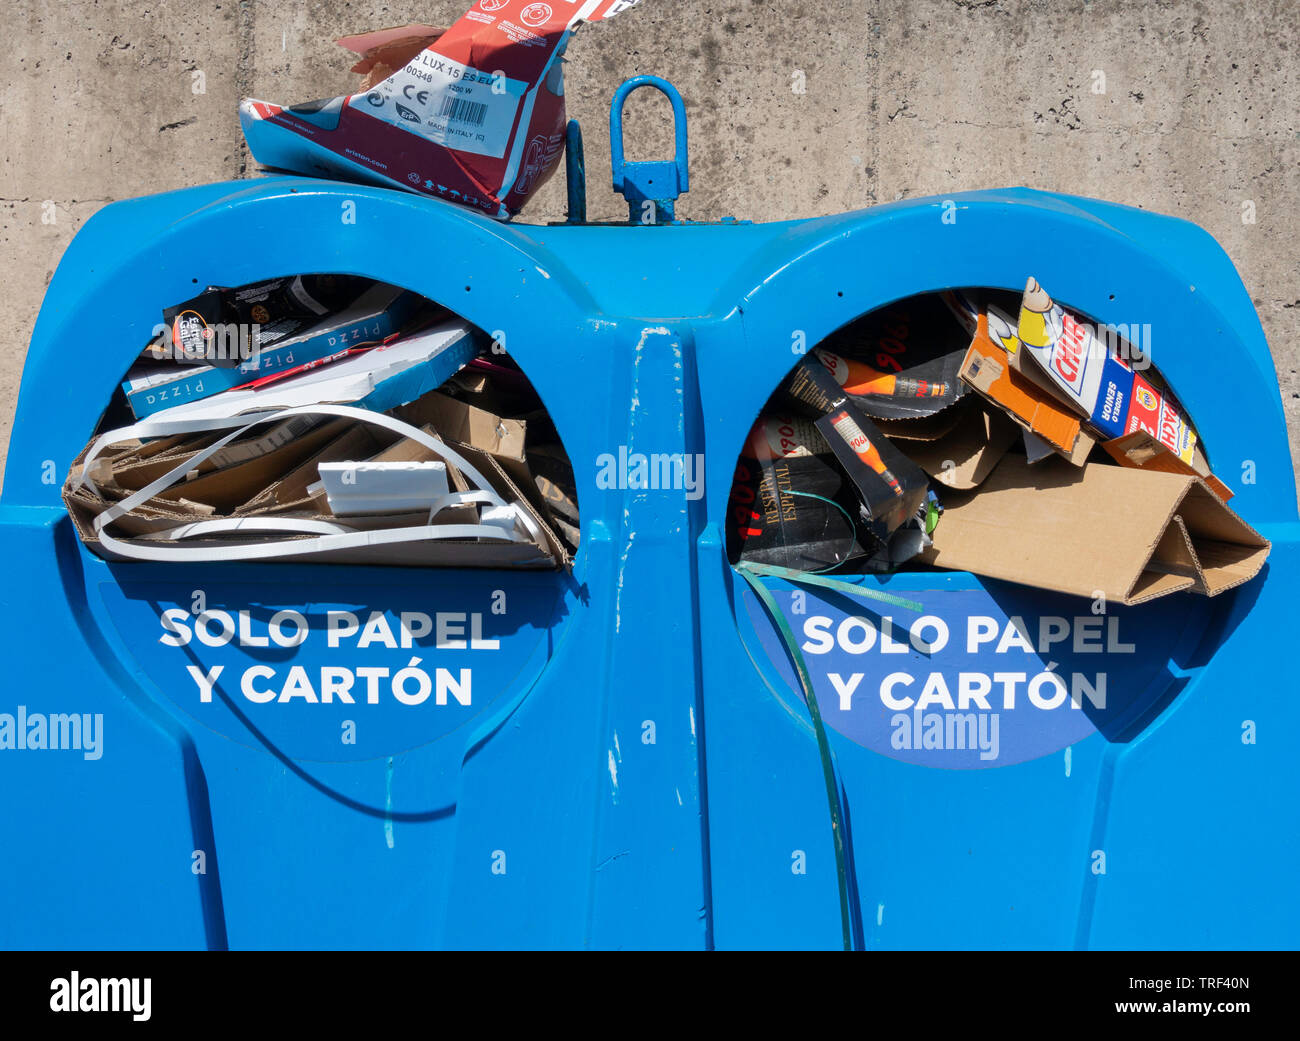 Solo papel y Karton (nur Papier und Karton) Recycling Container für öffentliche Nutzung in der Straße in Spanien. Stockfoto